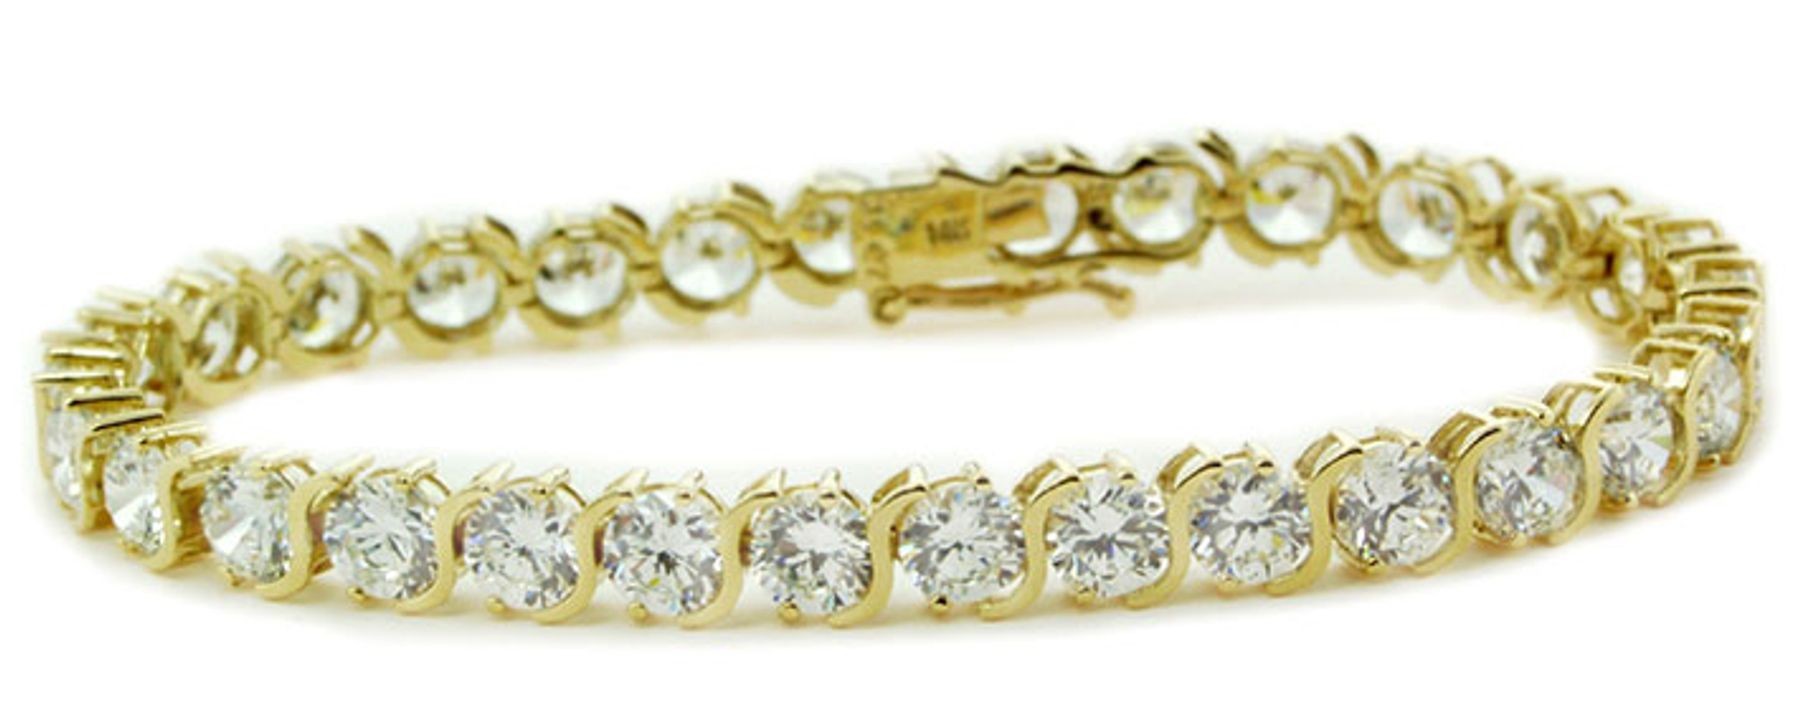 View Diamond Bracelets | Jewelry & Metal